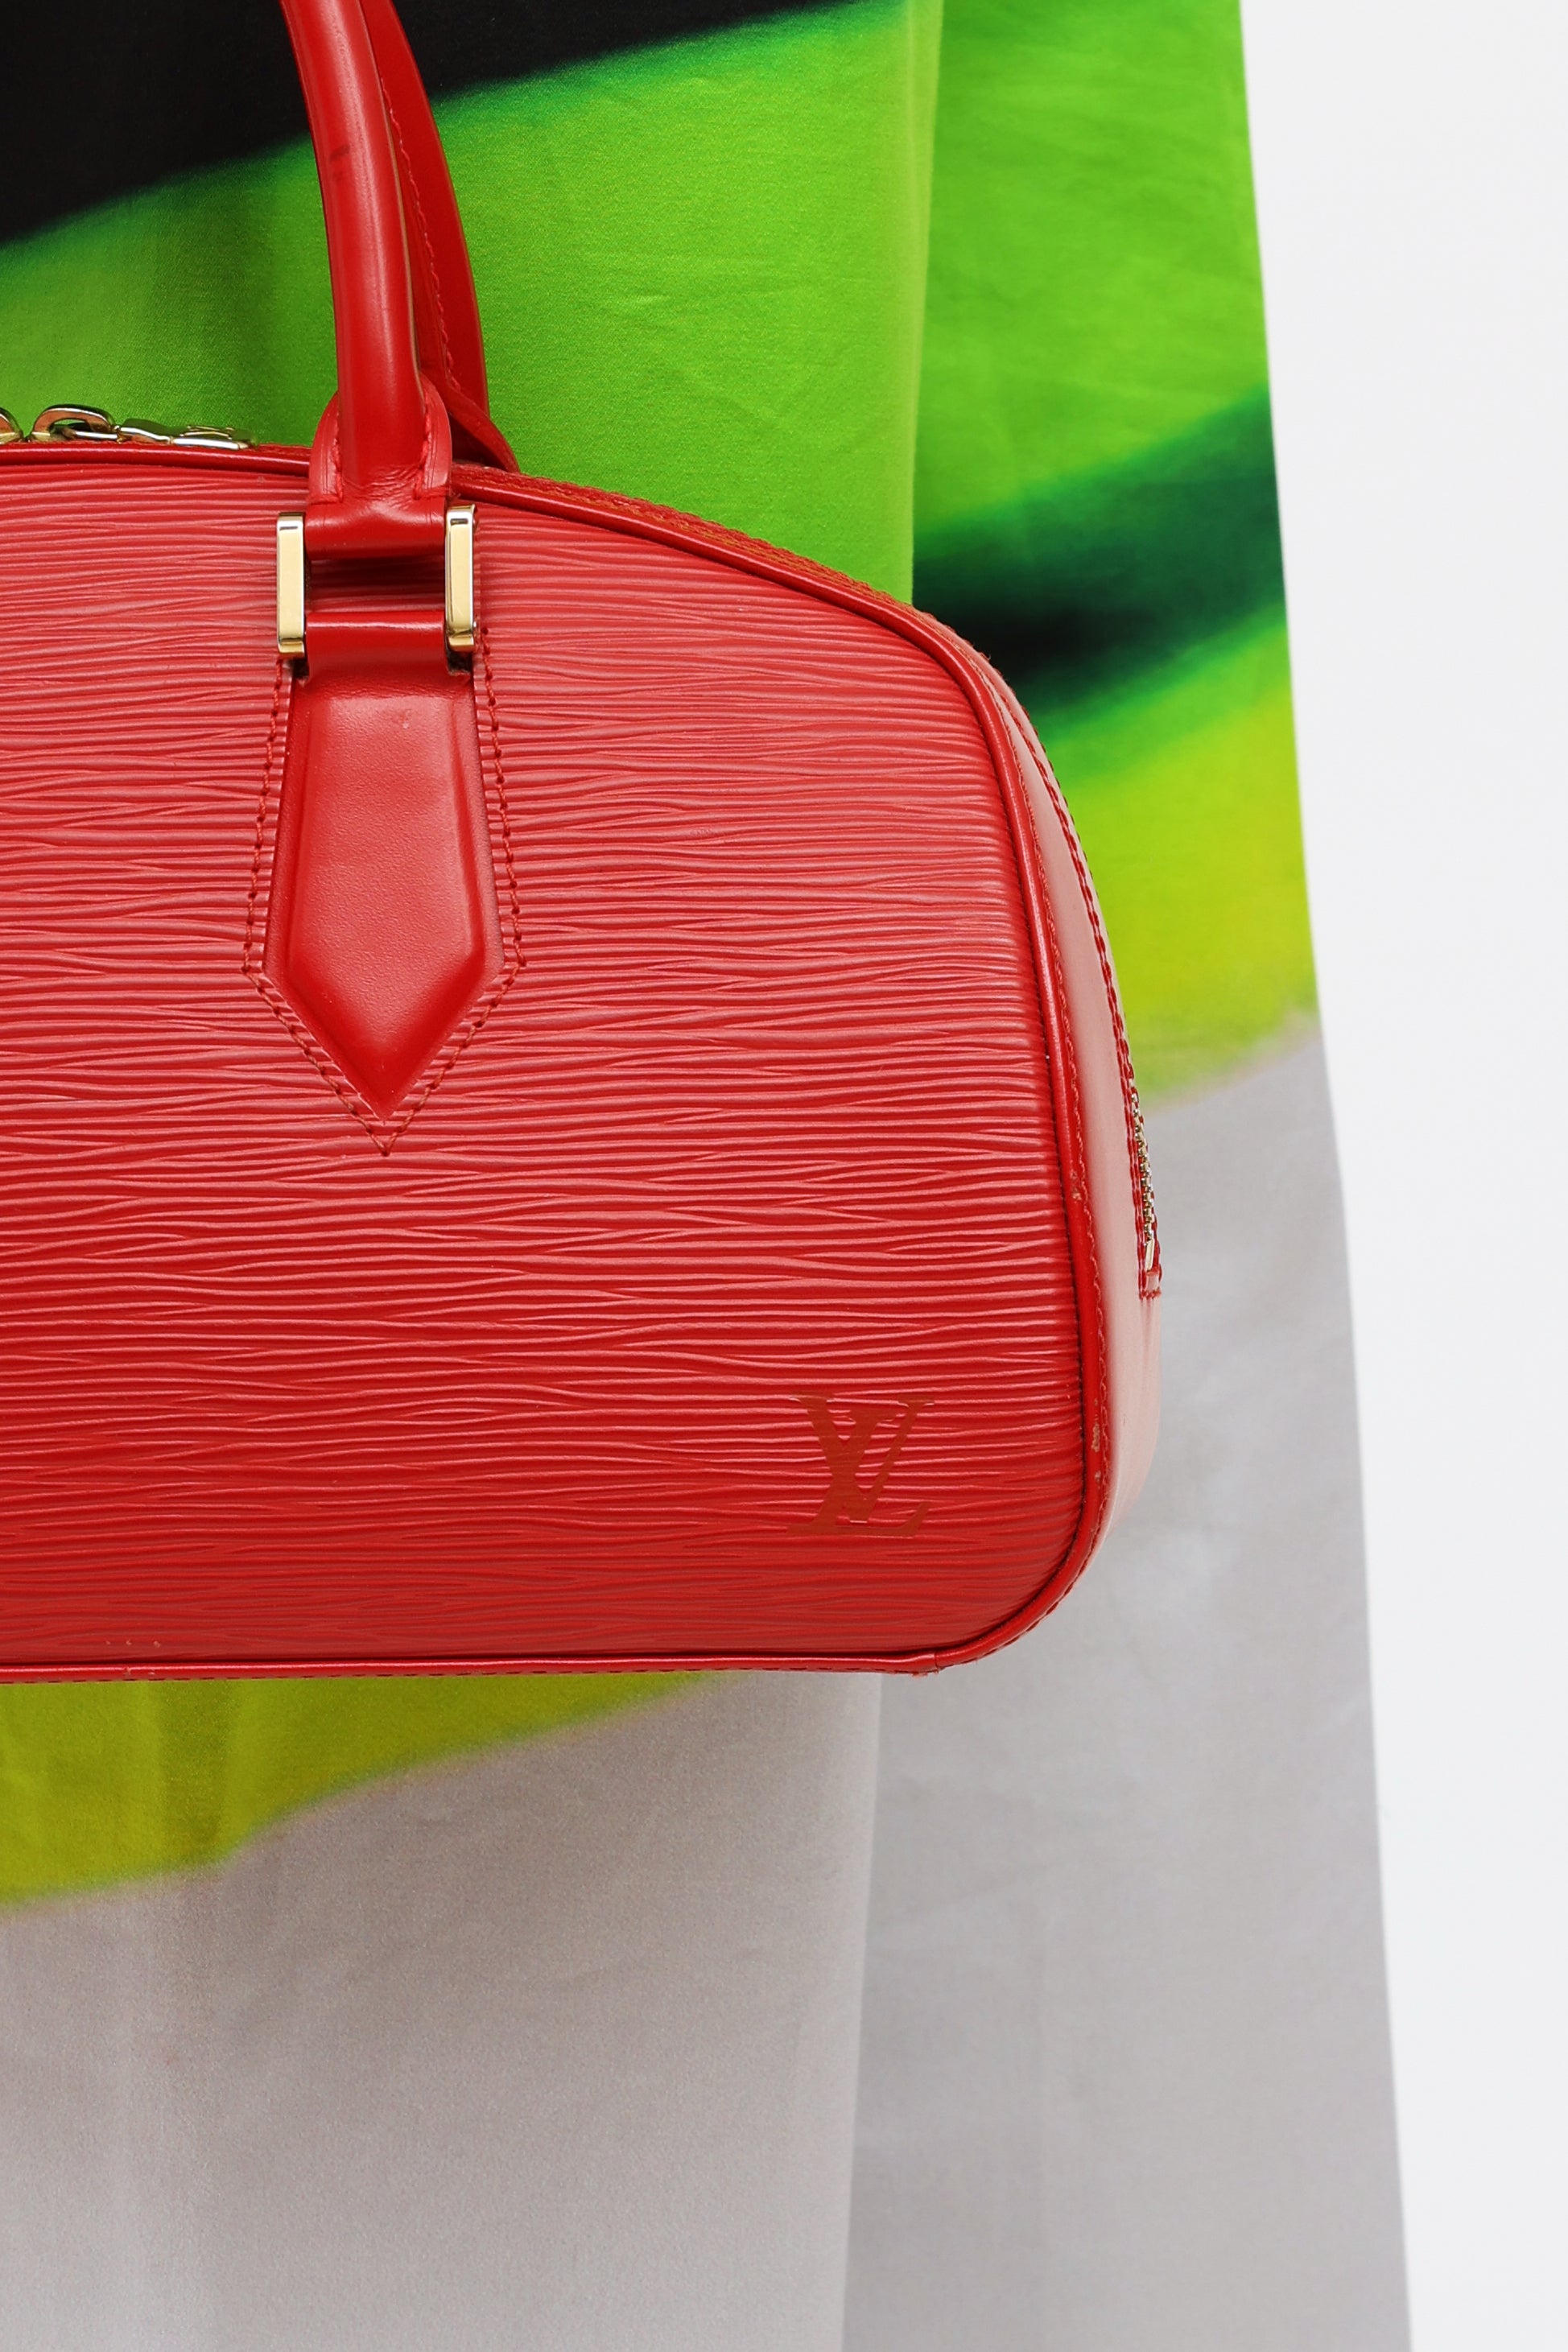 Louis Vuitton Authenticated Sablon Handbag